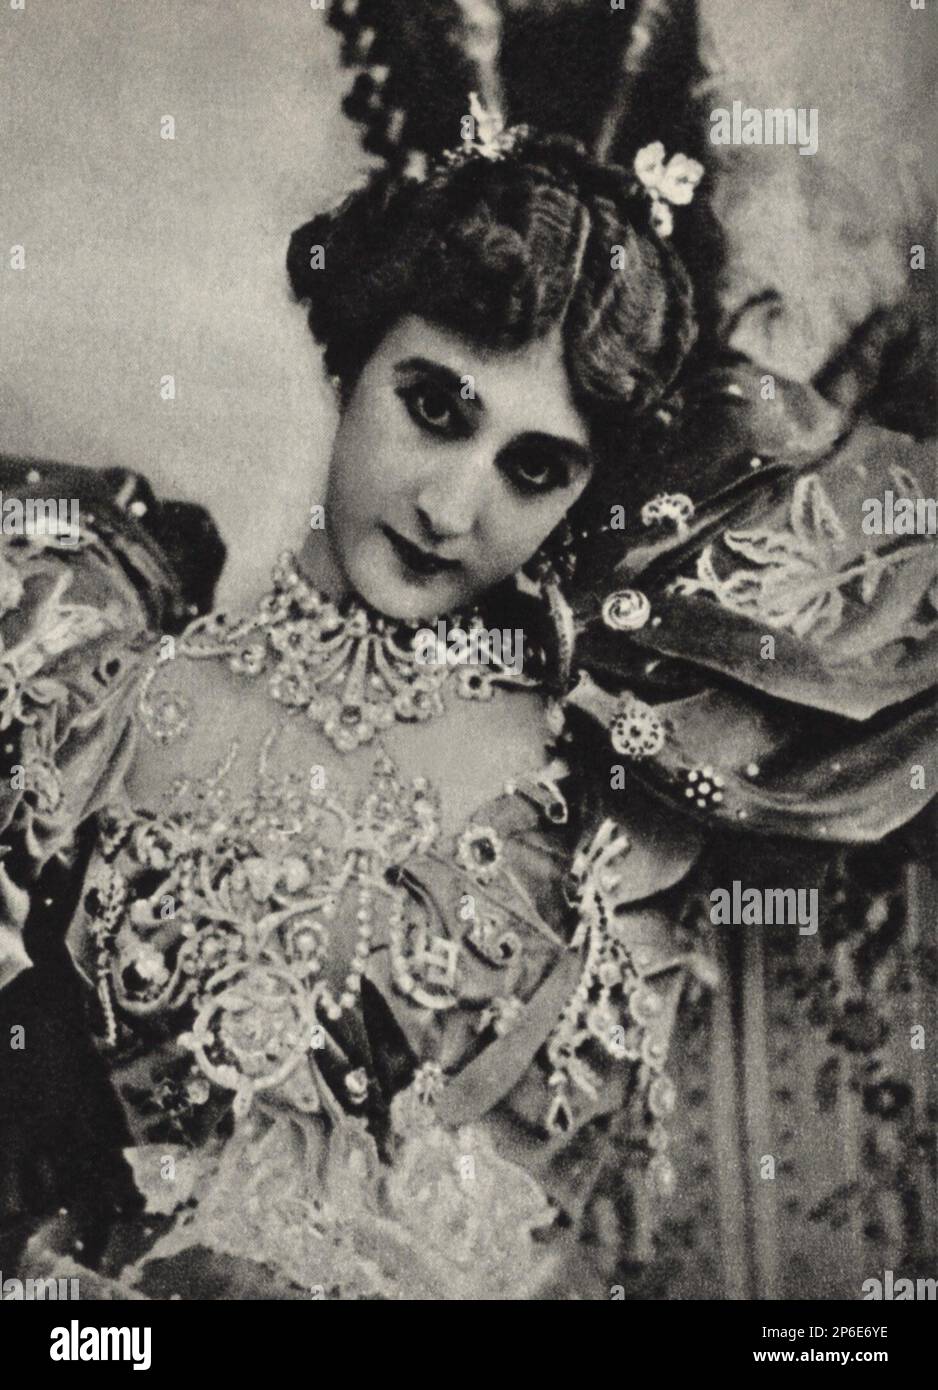 1900 c, FRANCIA : le célèbre chanteur et danseur d'opéra , demi-mondaine de la Belle Epoque PARISIENNE LA BELLE OTERO ( 1868 - 1965 ), Quand était danseuse aux Folies Bergère à Paris - Otéro - la Bella Otero - CORTIGIANA - BALLERINA - DANSEUSE - BALLET - BALLETTO - DANSE - bijoux - collana - collier - bijou - bijoux - bijoux - gioielli - gioiello - musa - Cocotte ---- Archivio GBB Banque D'Images